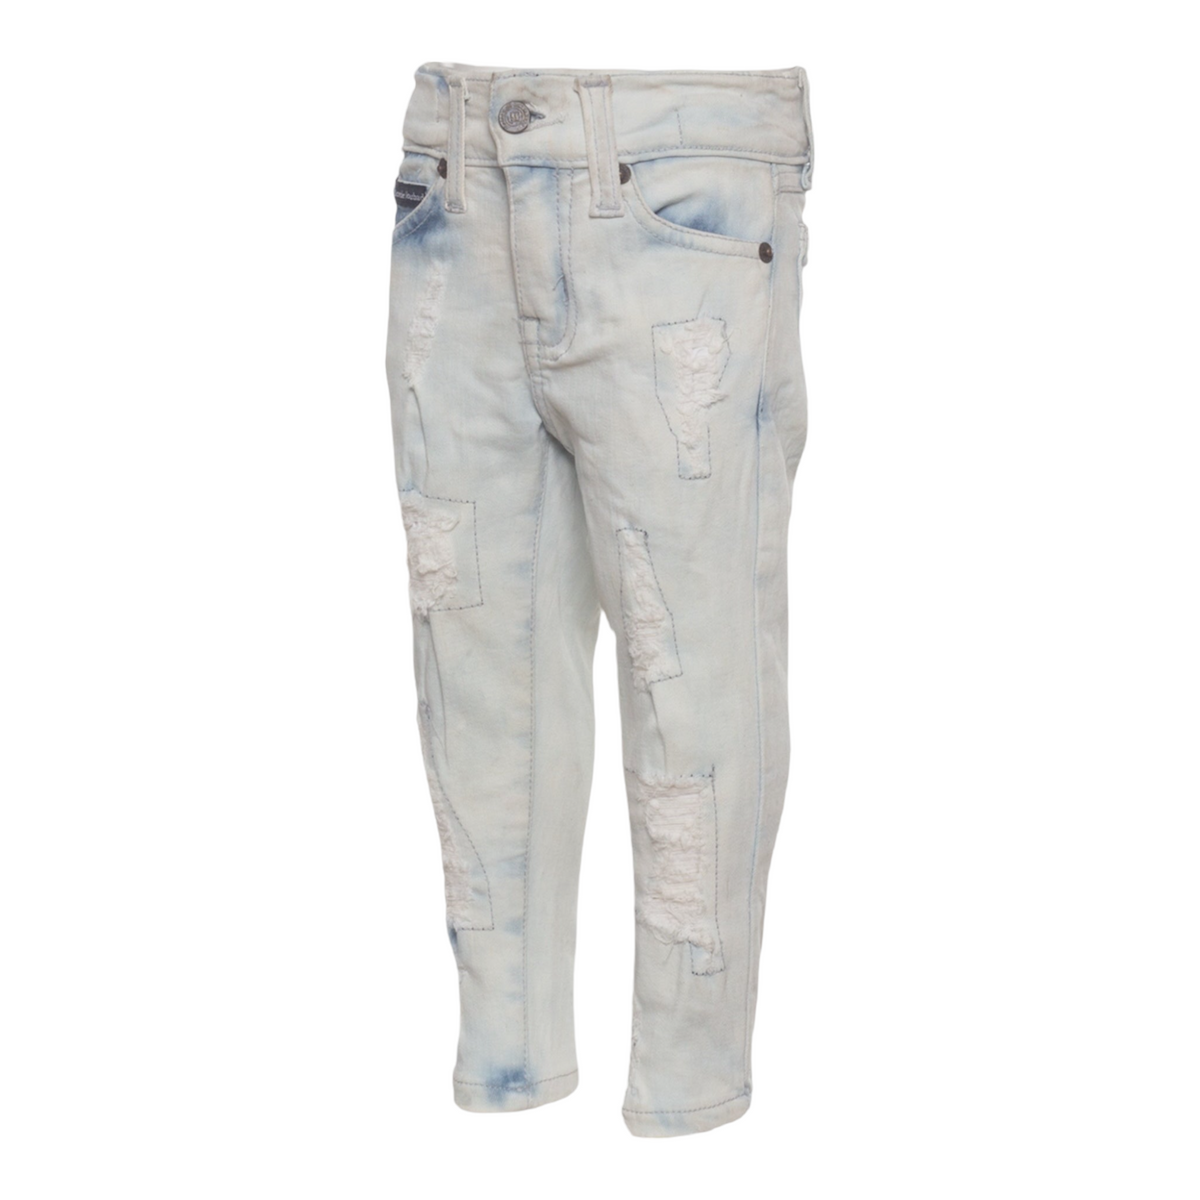 MDB Brand Kid's Distressed Skinny Jeans